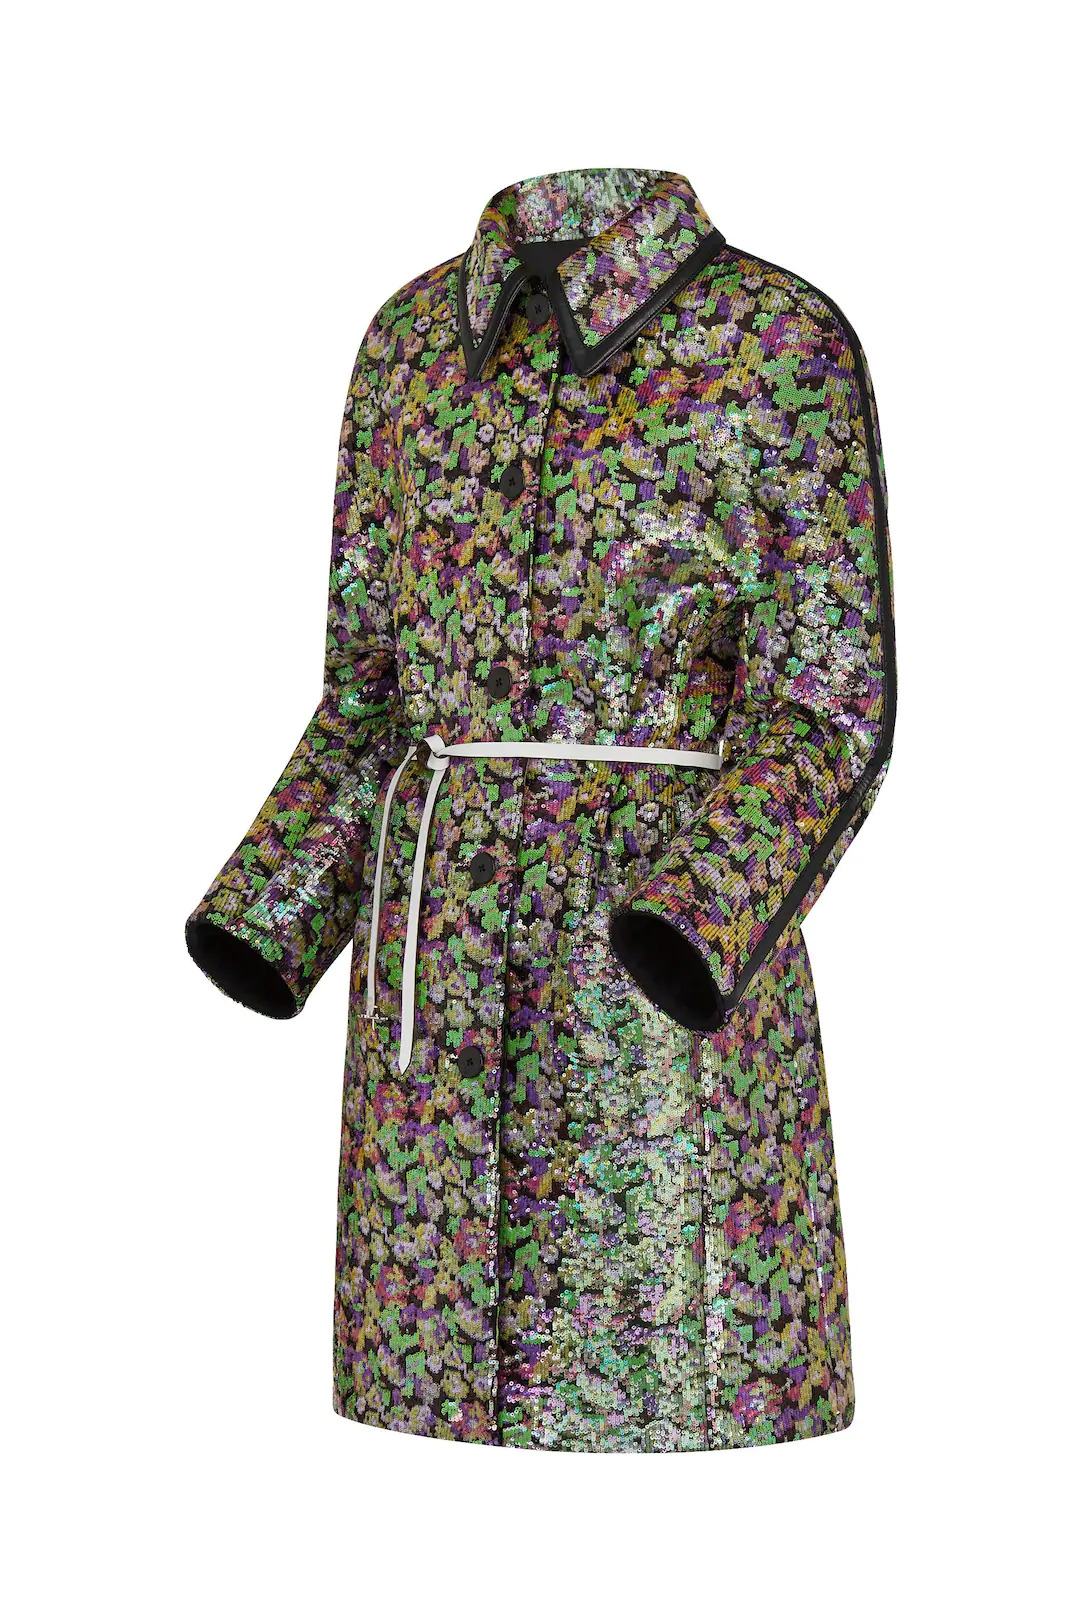 Louis Vuitton Embroidered Kimono Sleeve Coat